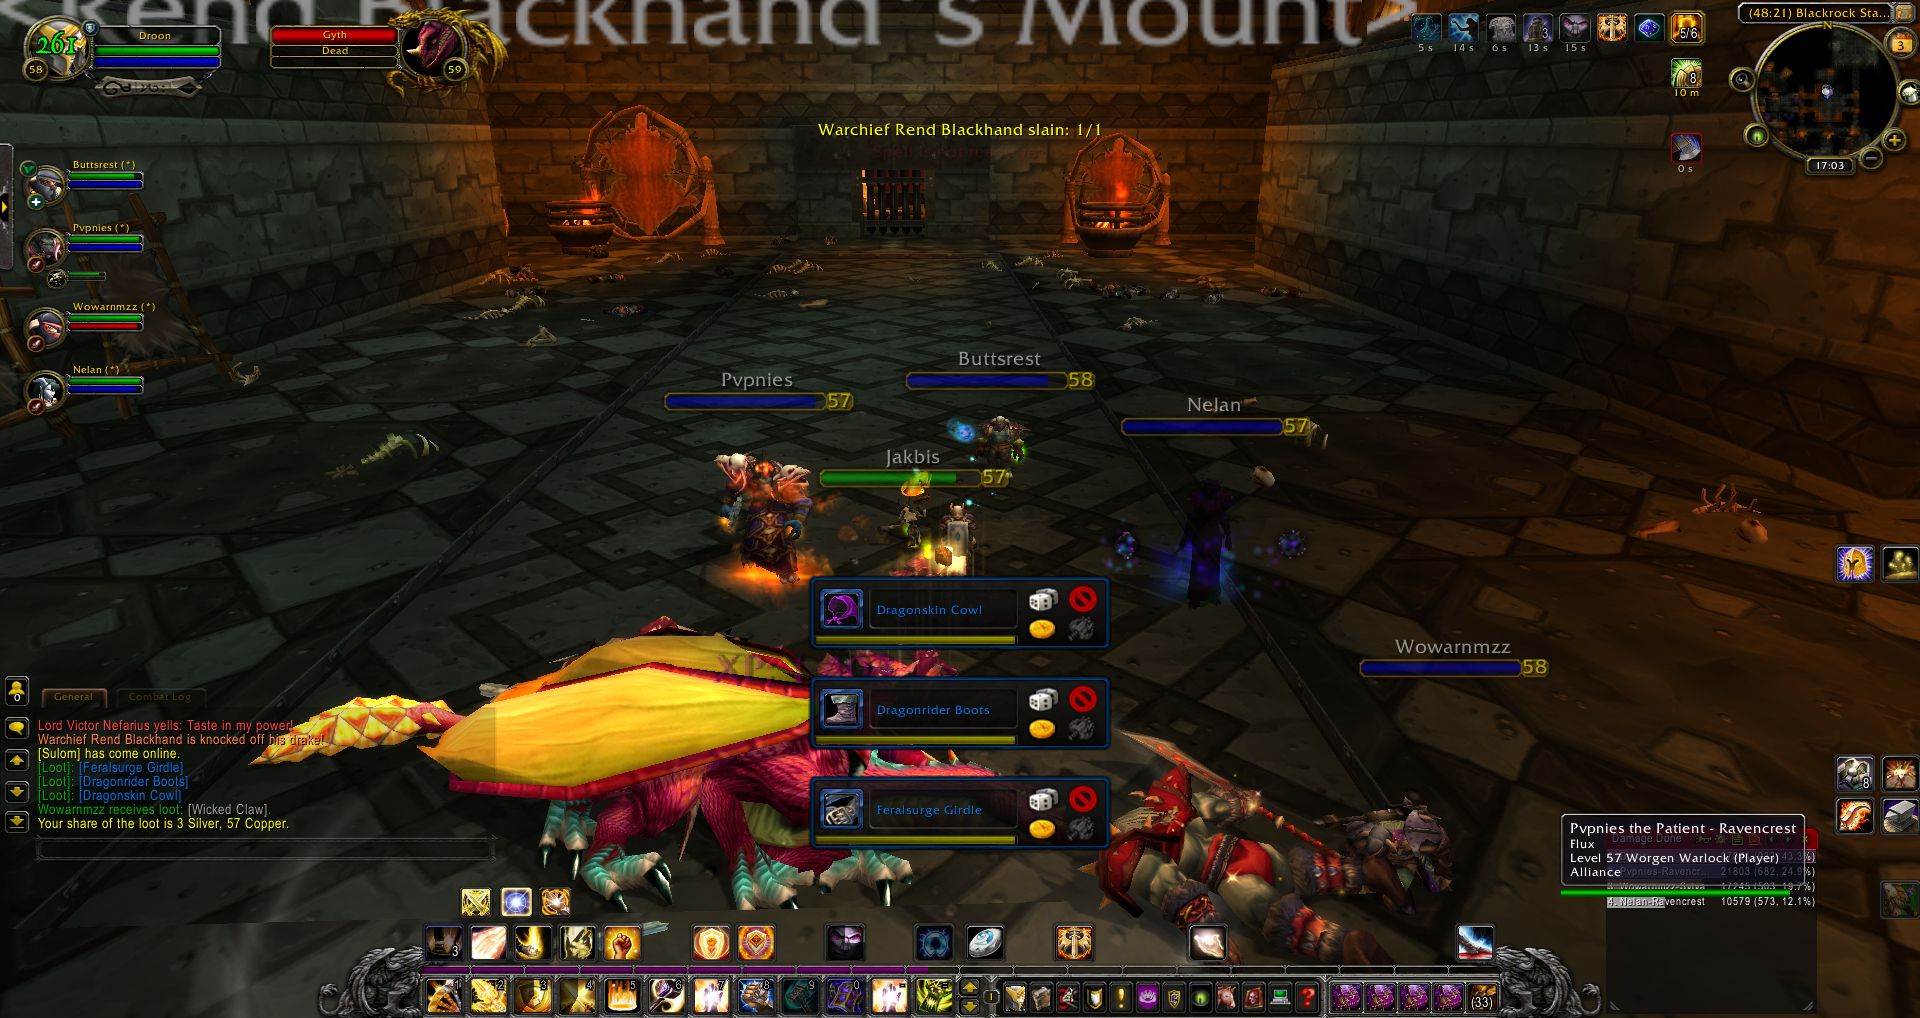 Warchief Rend Blackhand slain wow screenshot